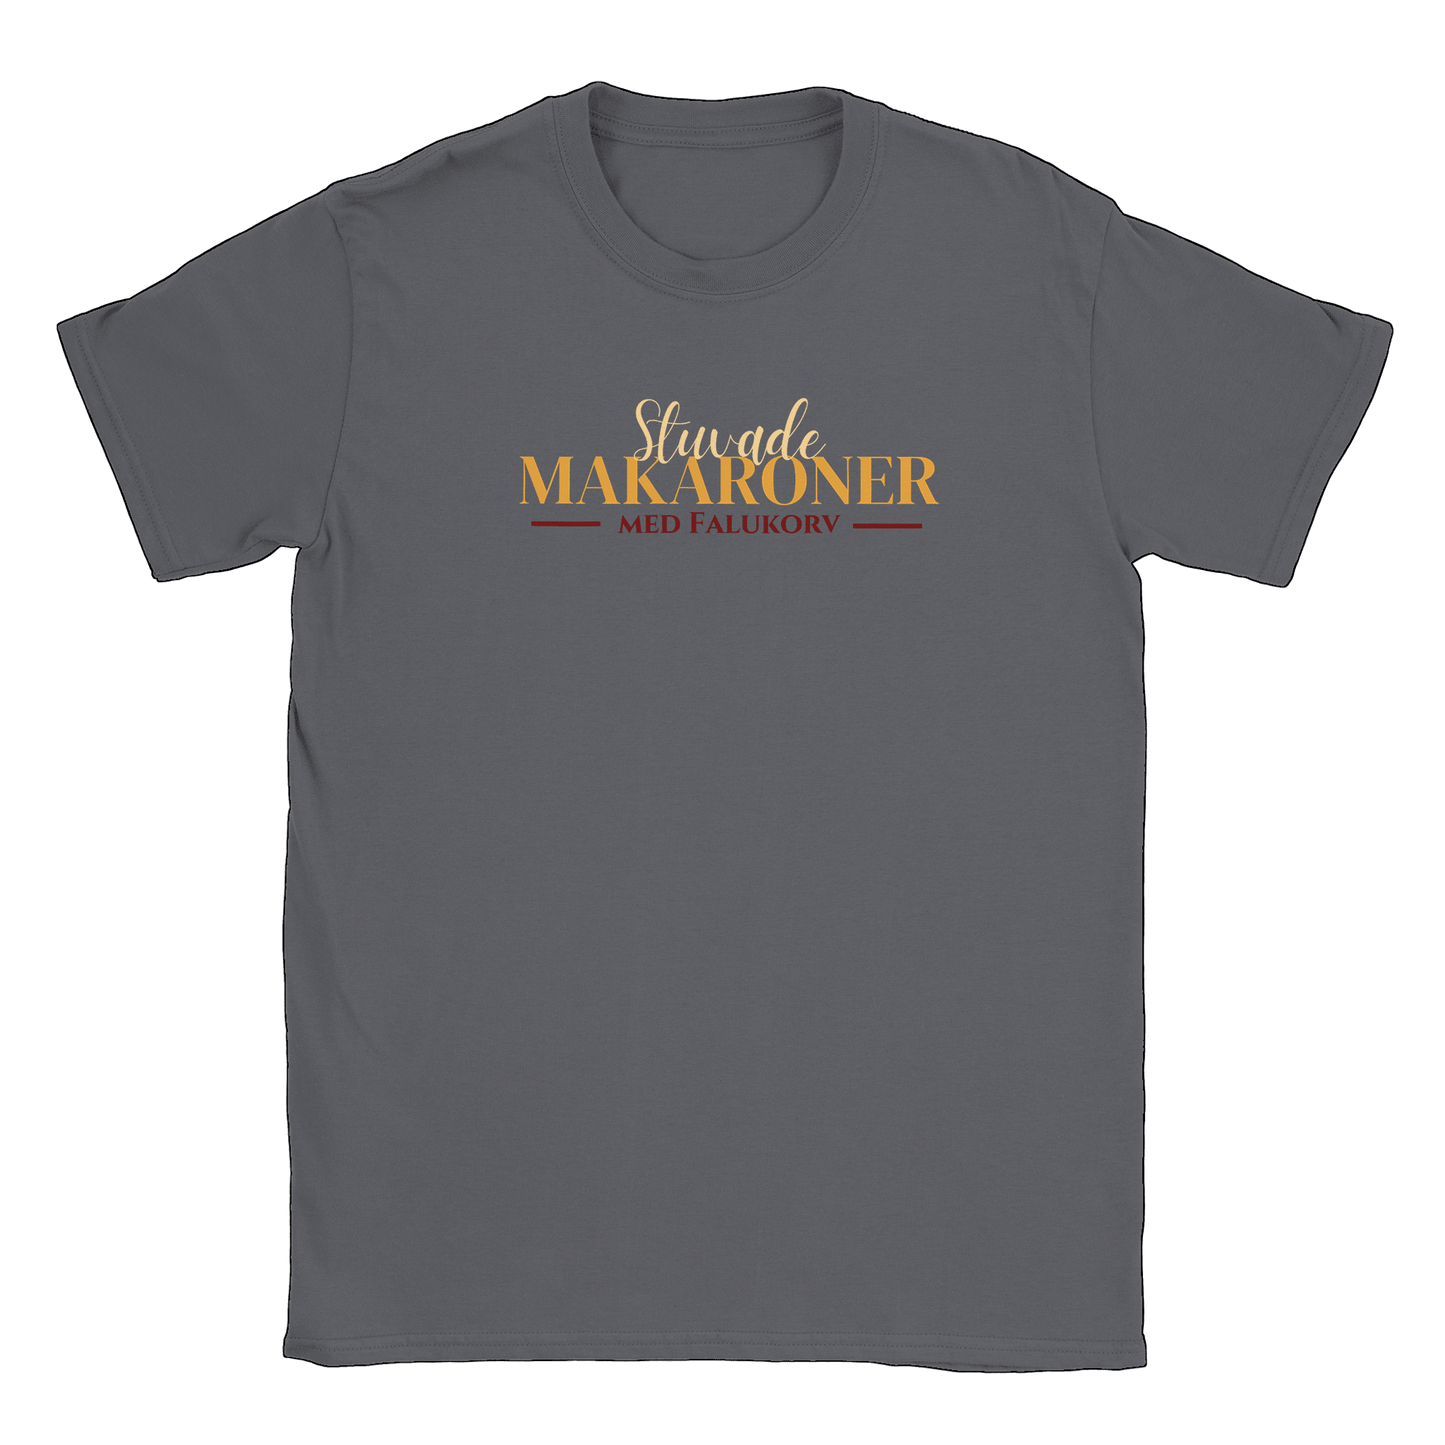 Stuvade makaroner med falukorv - T-shirt Charcoal